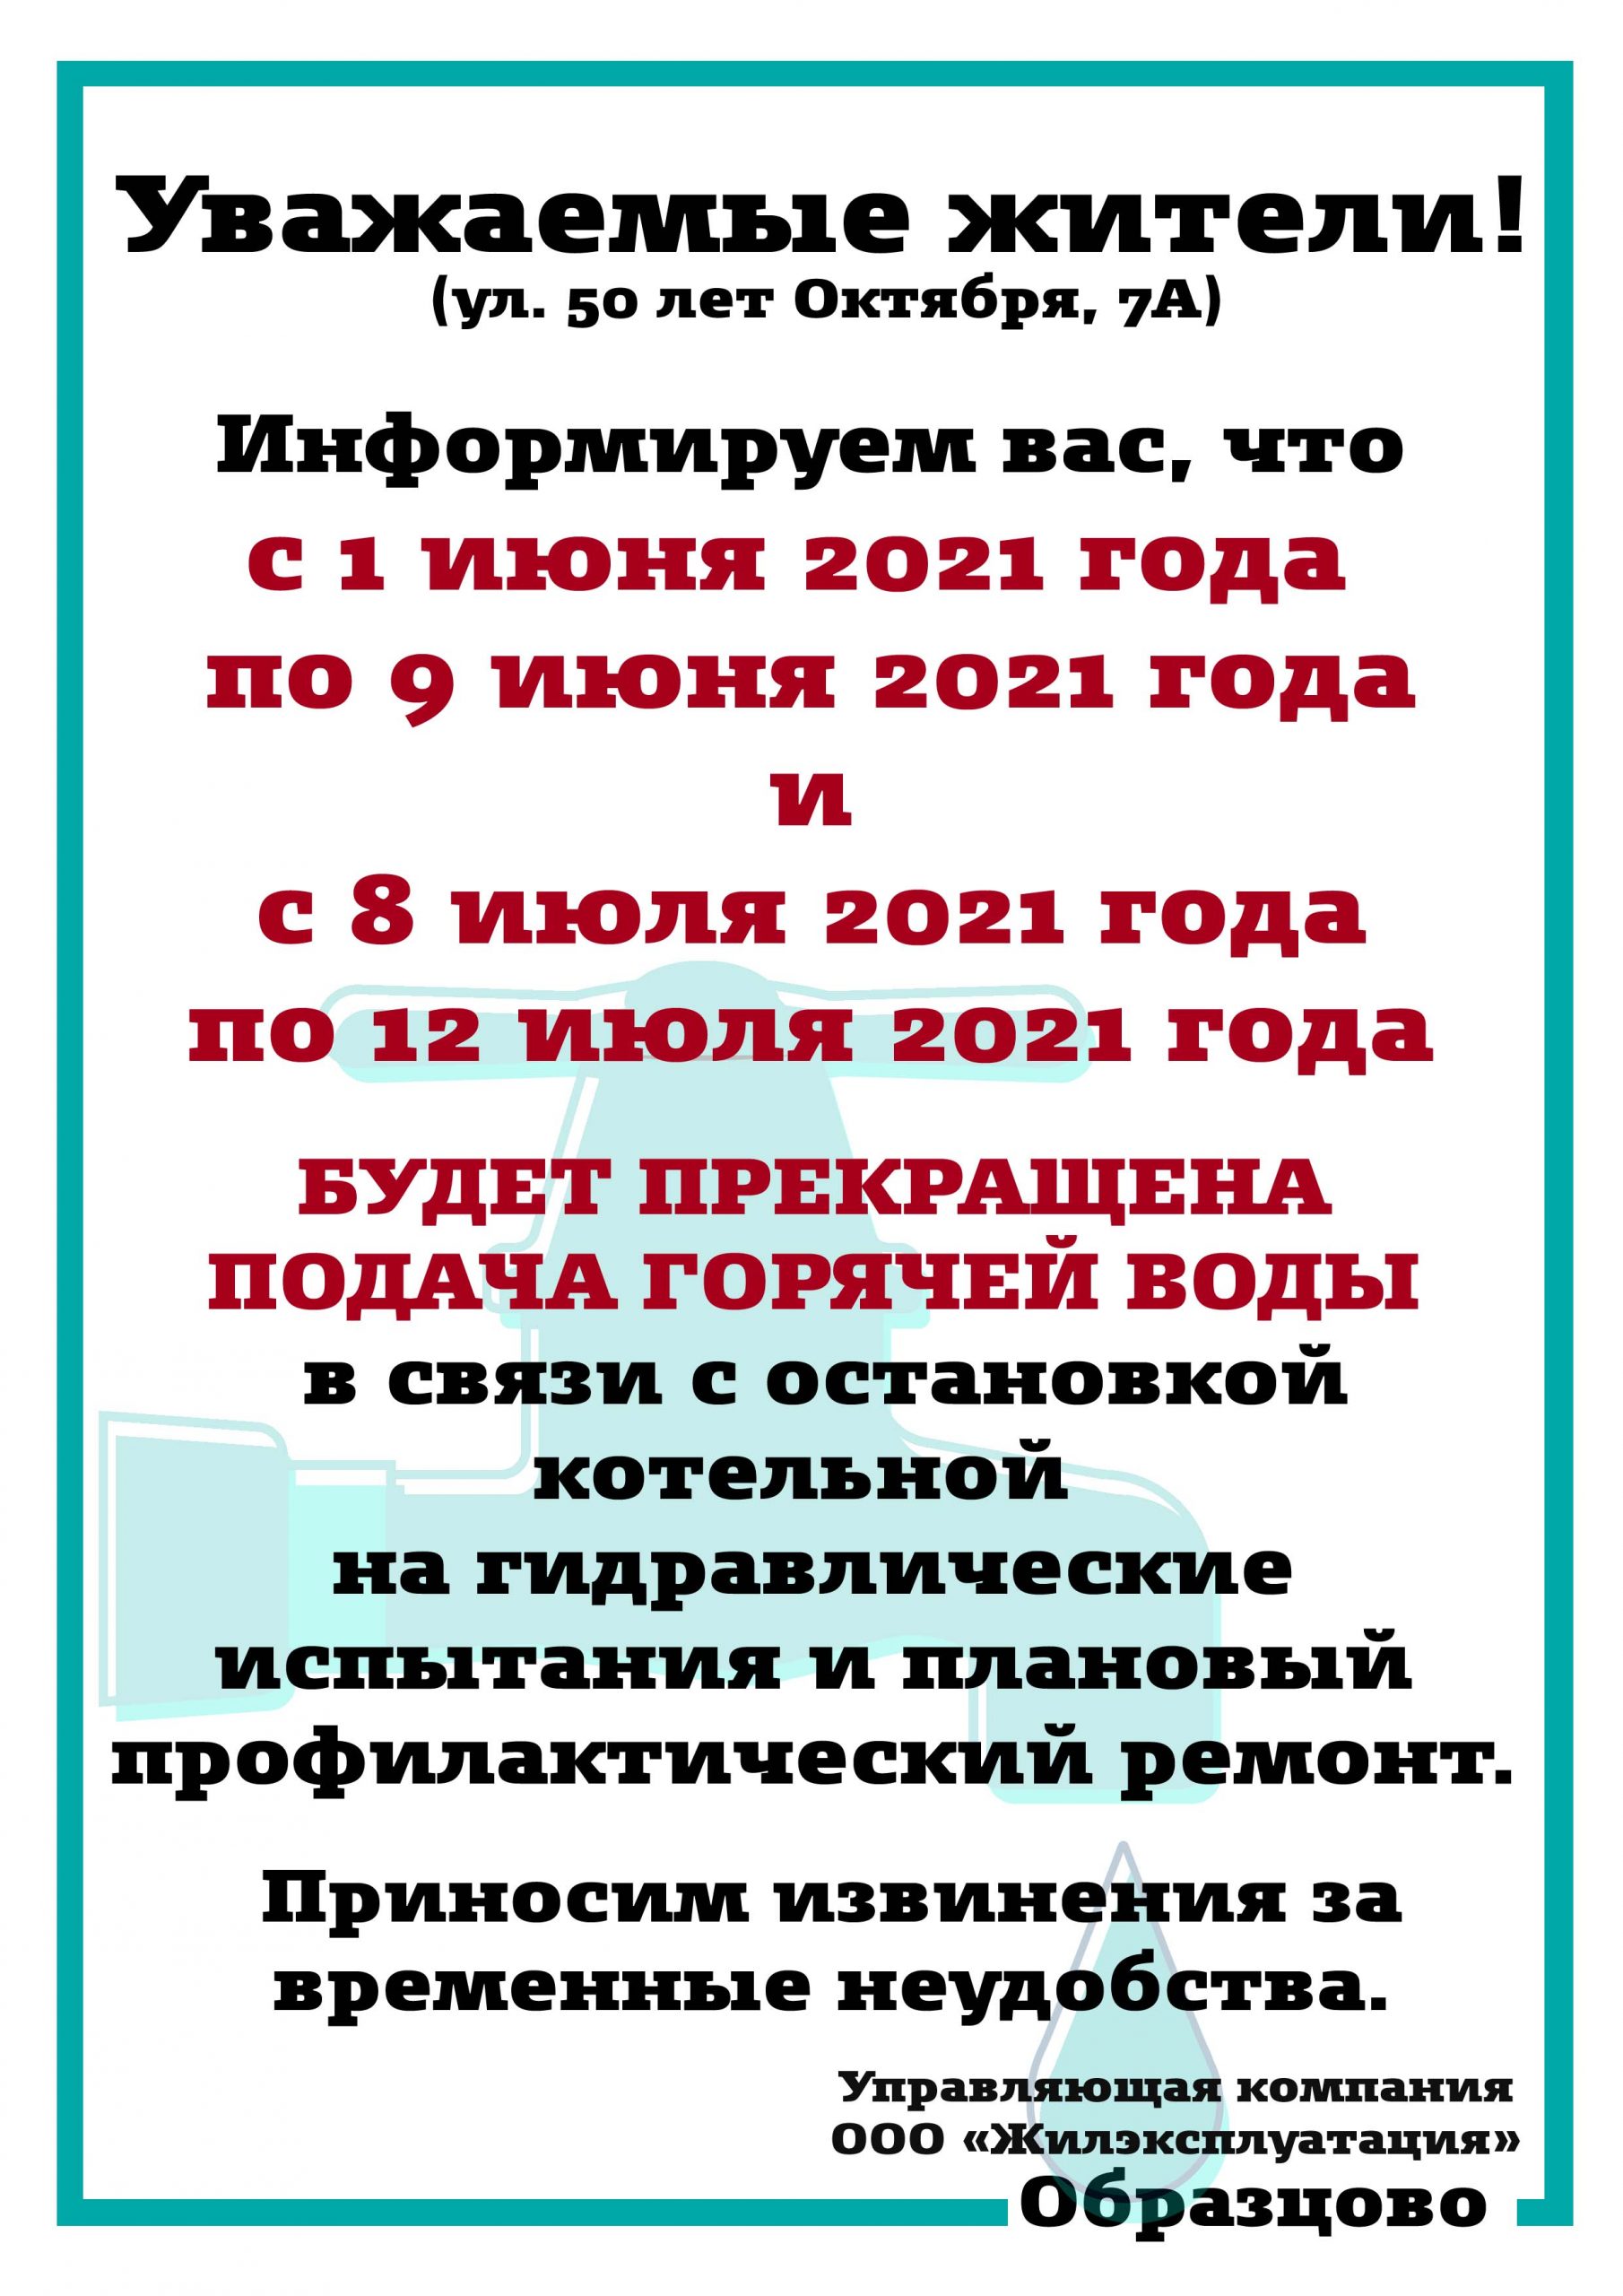 Мариинск 50 лет октября